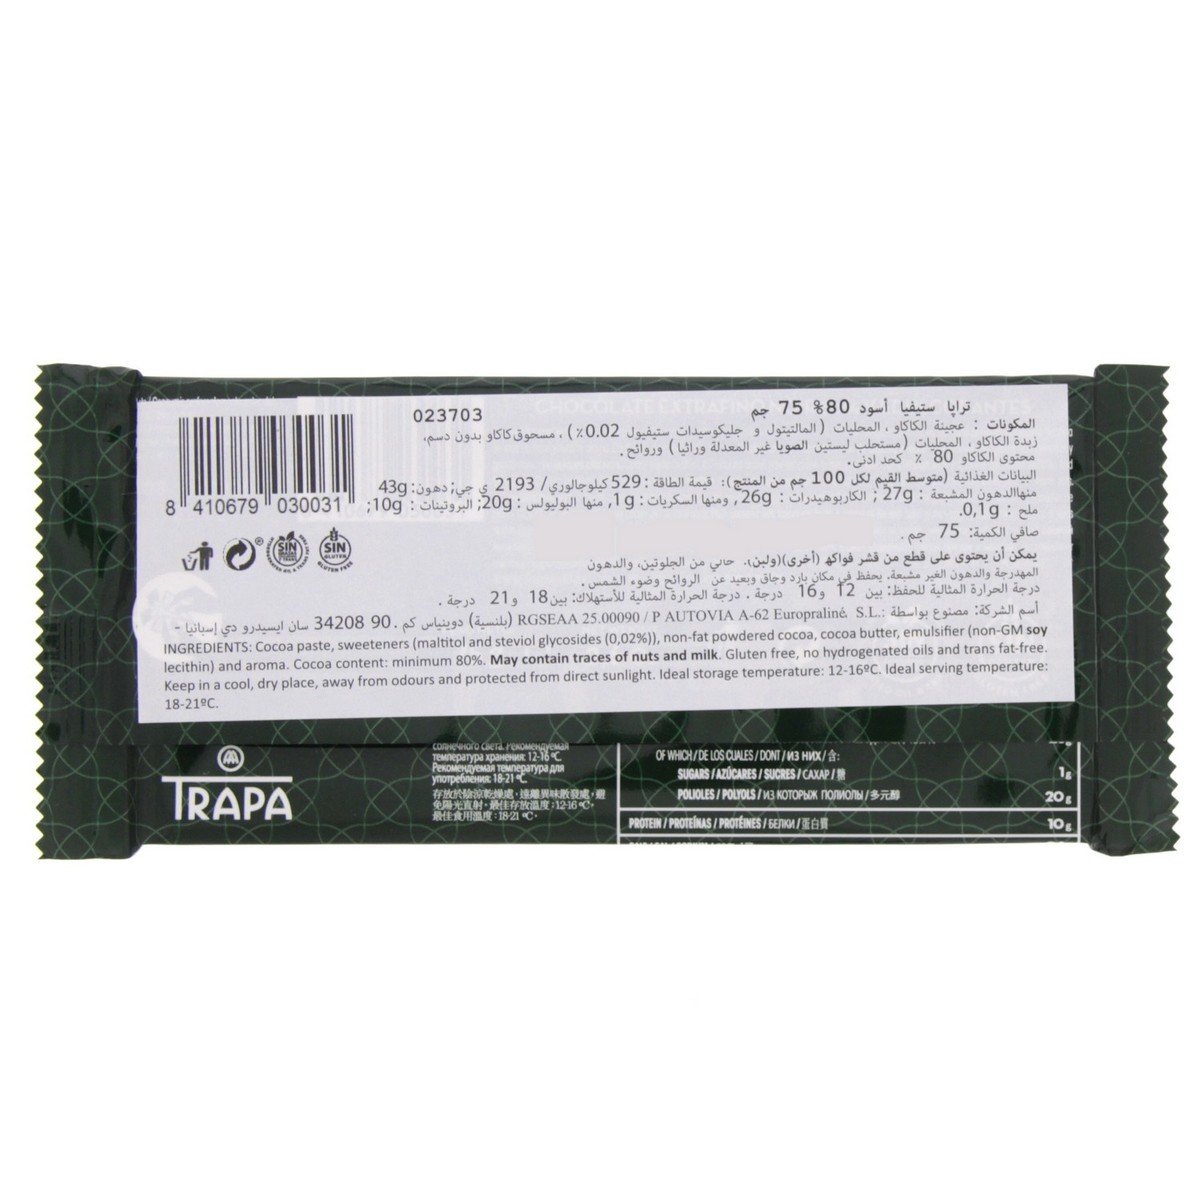 Trapa Stevia Noir 80% Dark Chocolate Bar 75 Gm